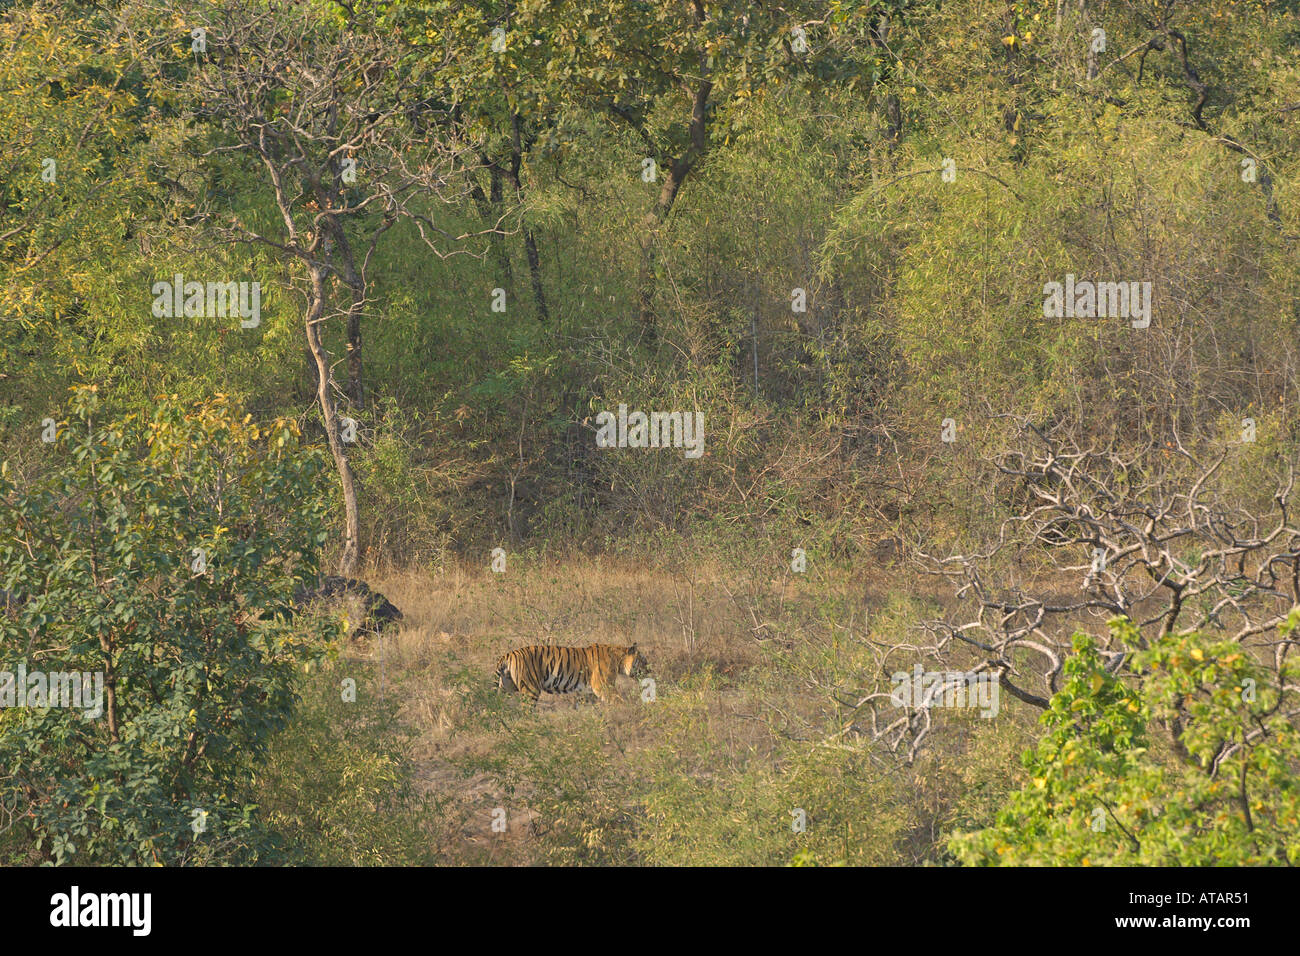 Tigre del Bengala Panthera tigris maschio adulto B2 nella foresta di sal Bandhavgarh India Marzo 2005 Foto Stock